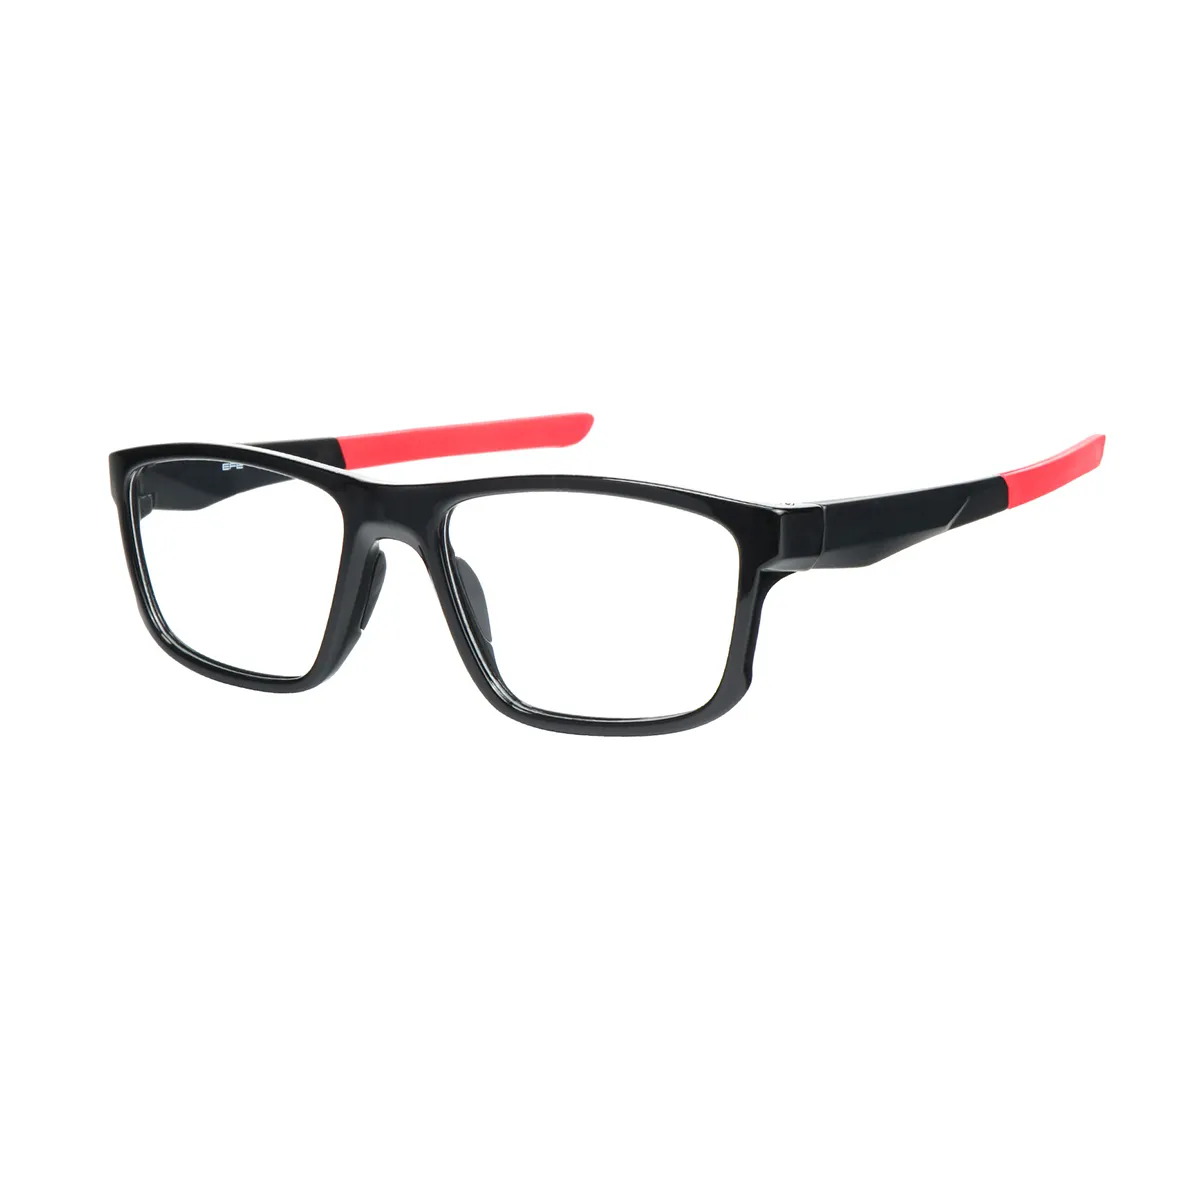 Sports Rectangle Black-Green Eyeglasses for Men